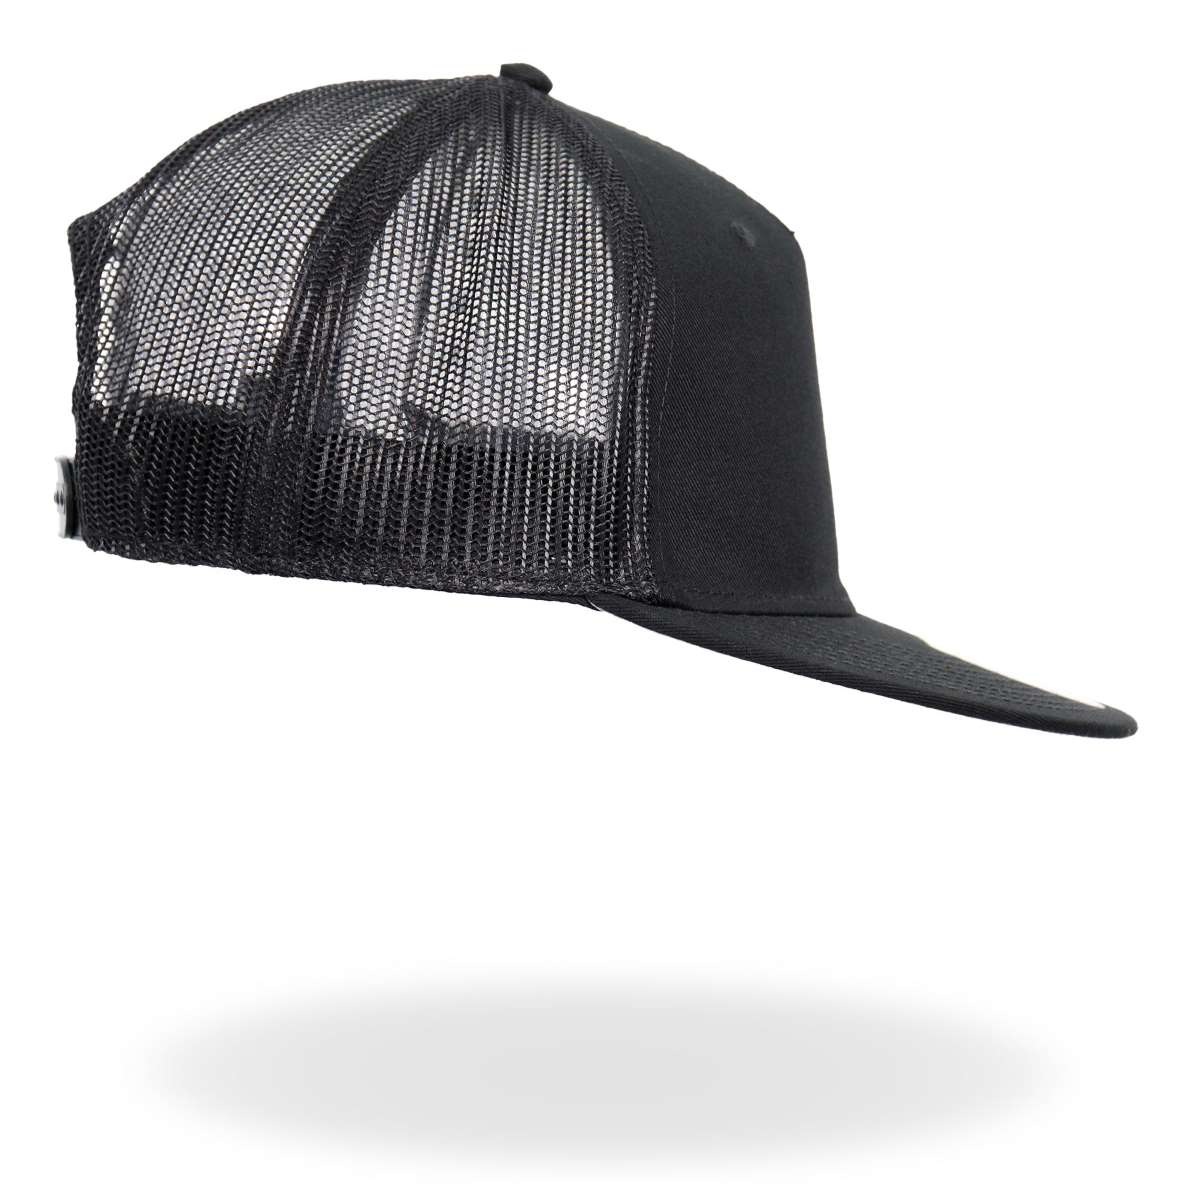 Hot Leathers Black Skeleton Hand DILLIGAF Snapback Hat GSH4007